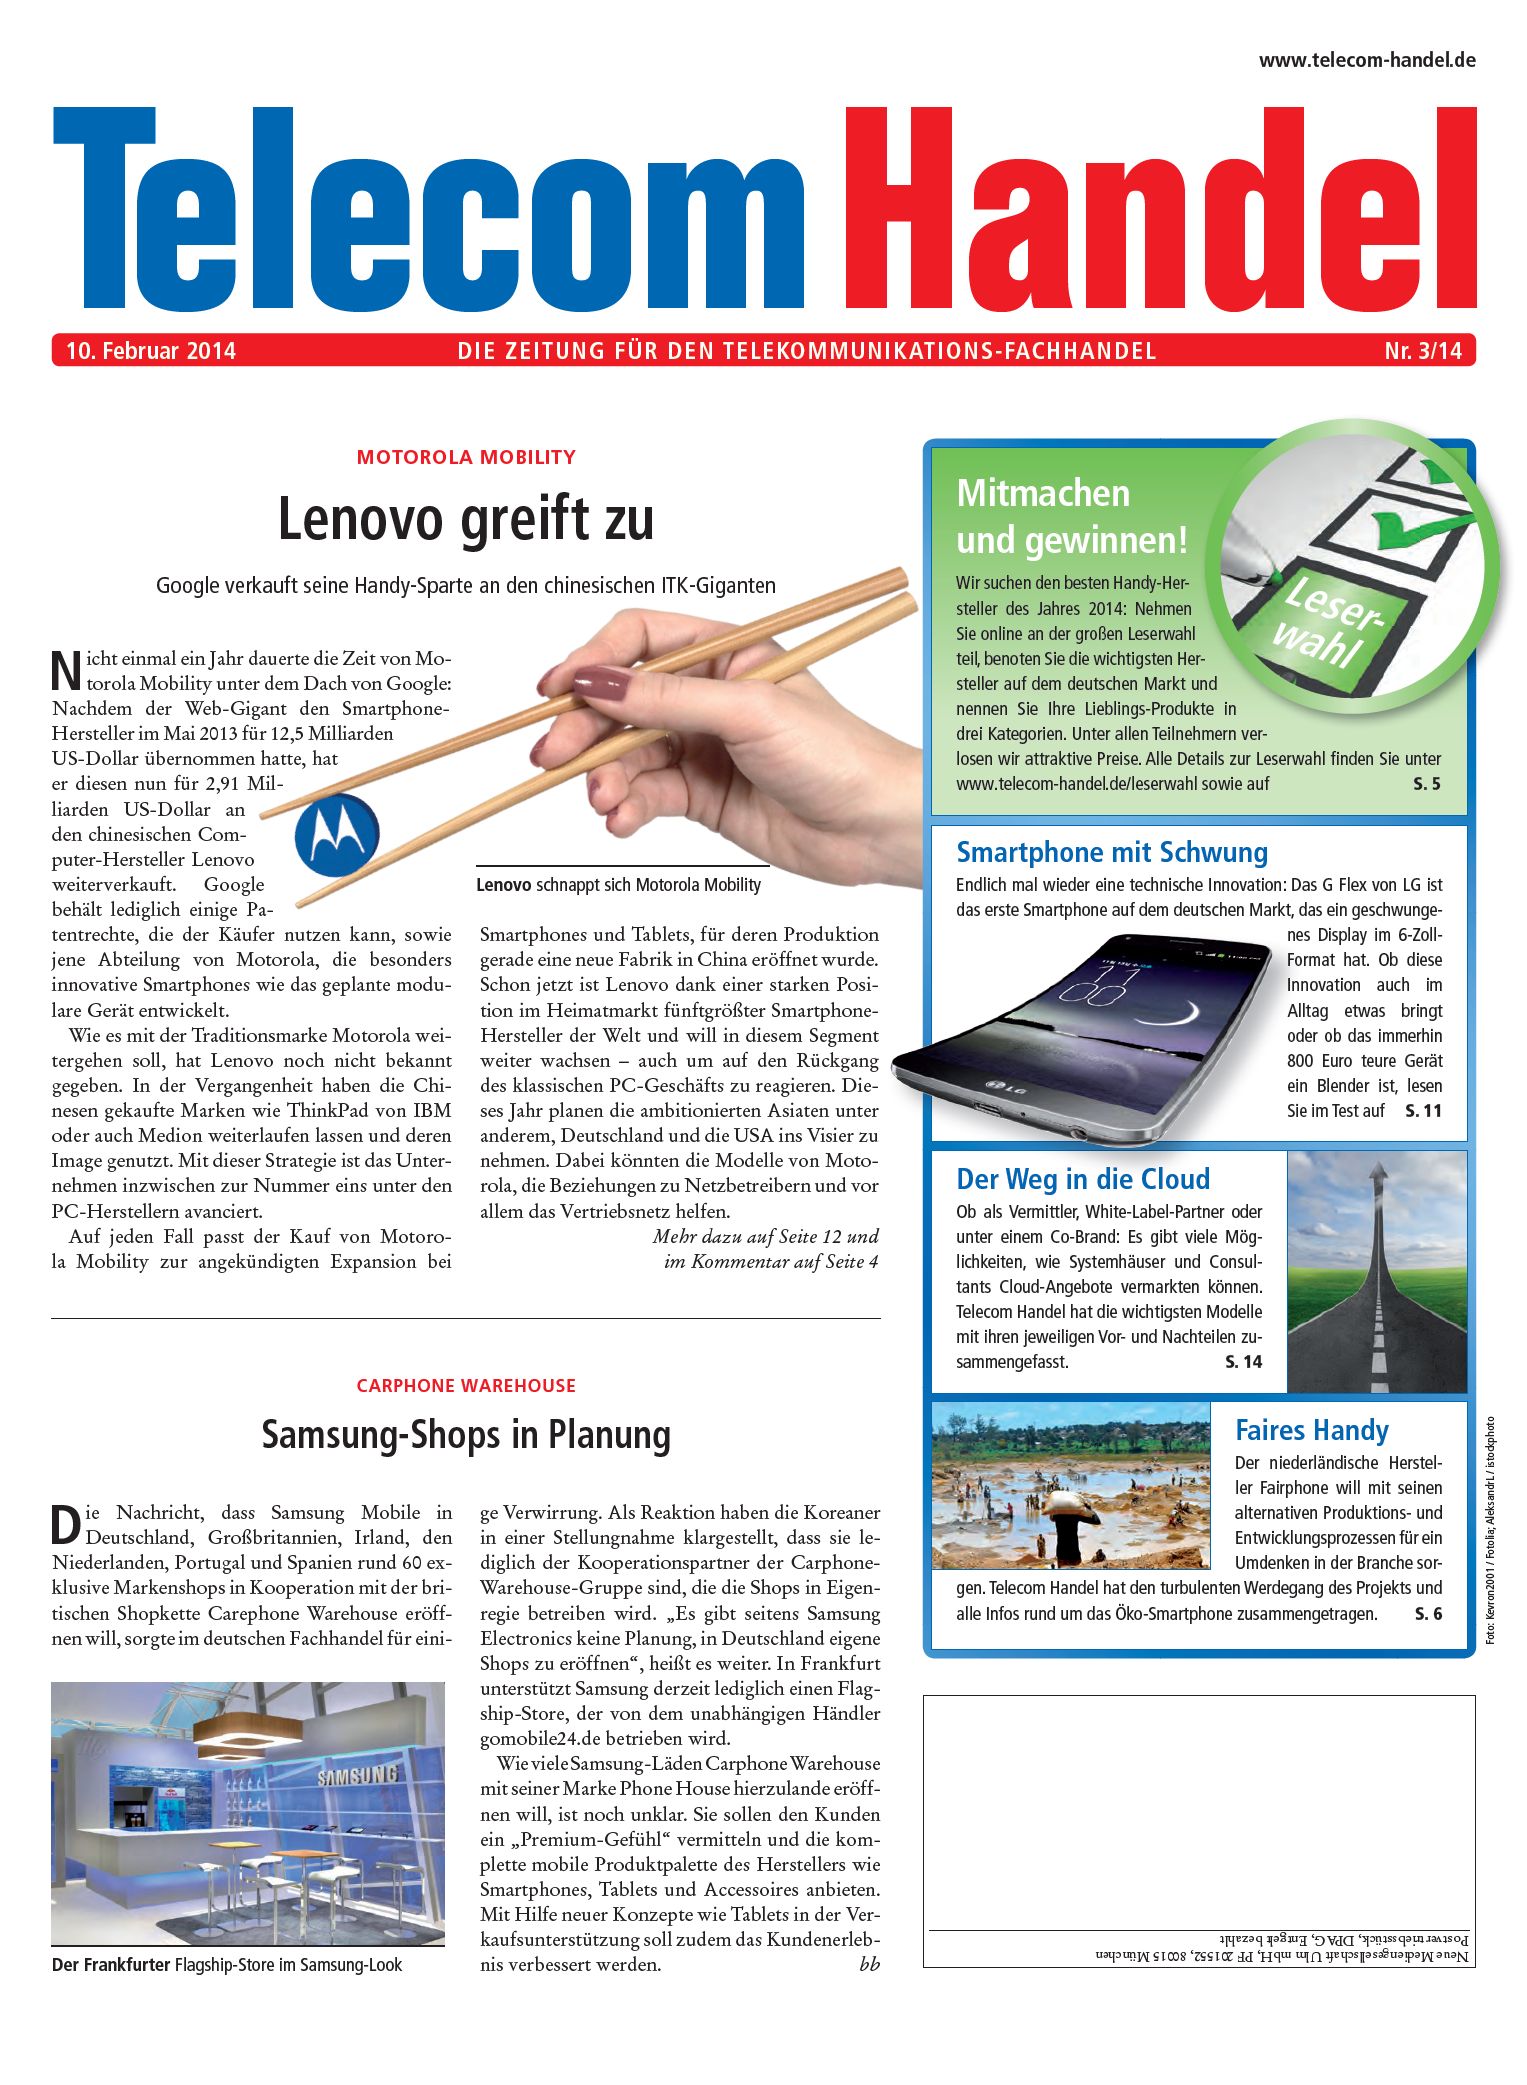 Telecom Handel Ausgabe 03/2014